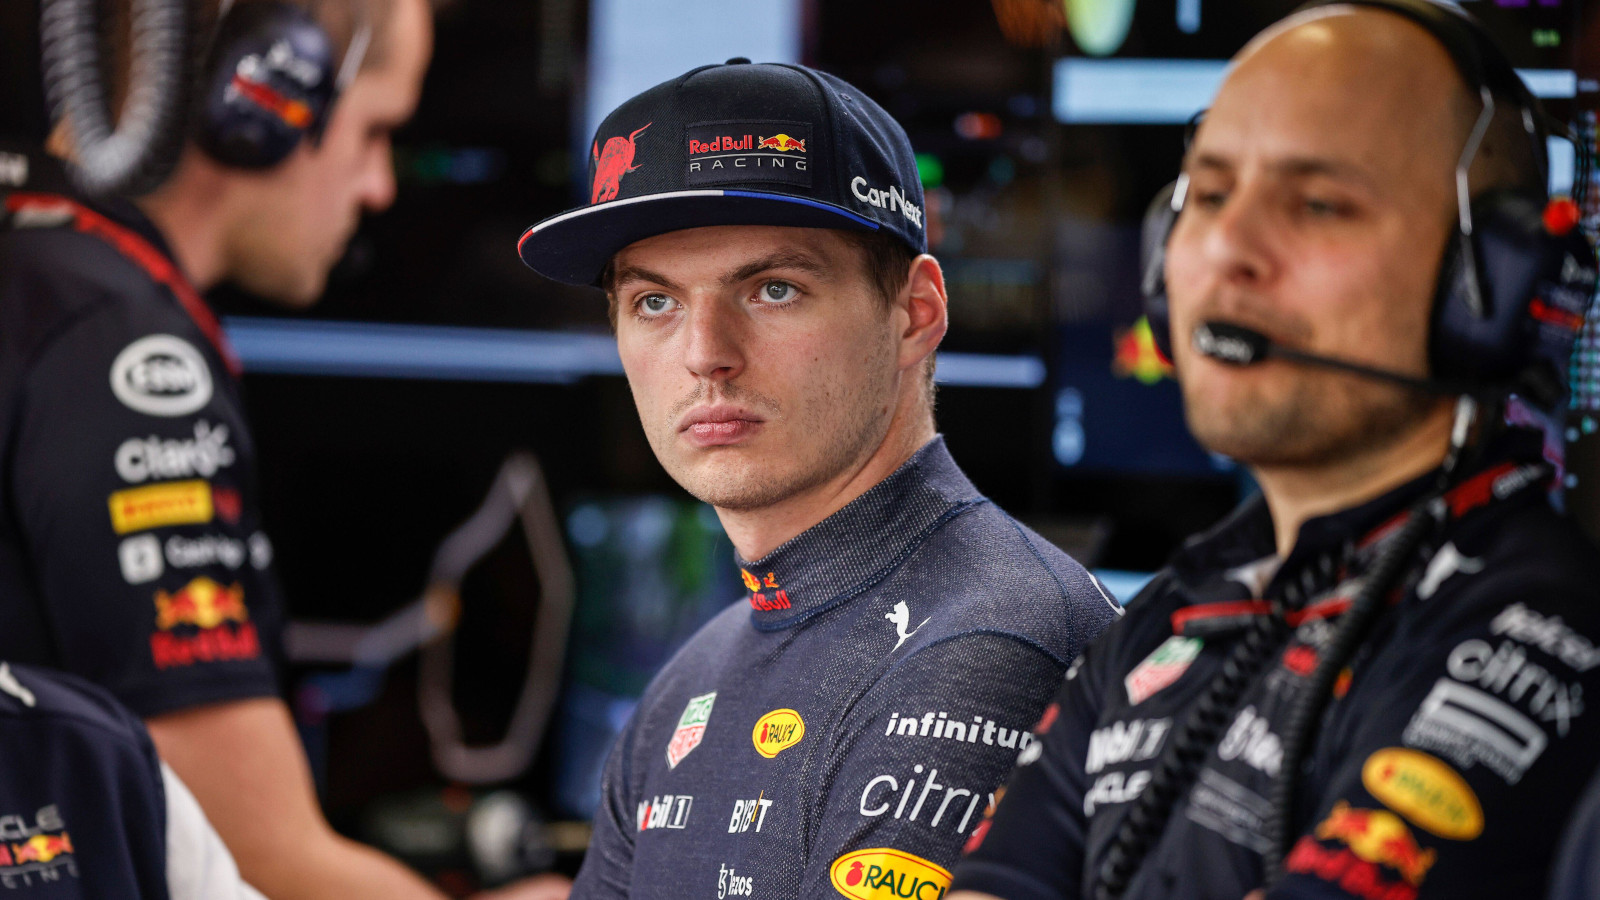 Max Verstappen not looking happy as he stares. Baku June 2022